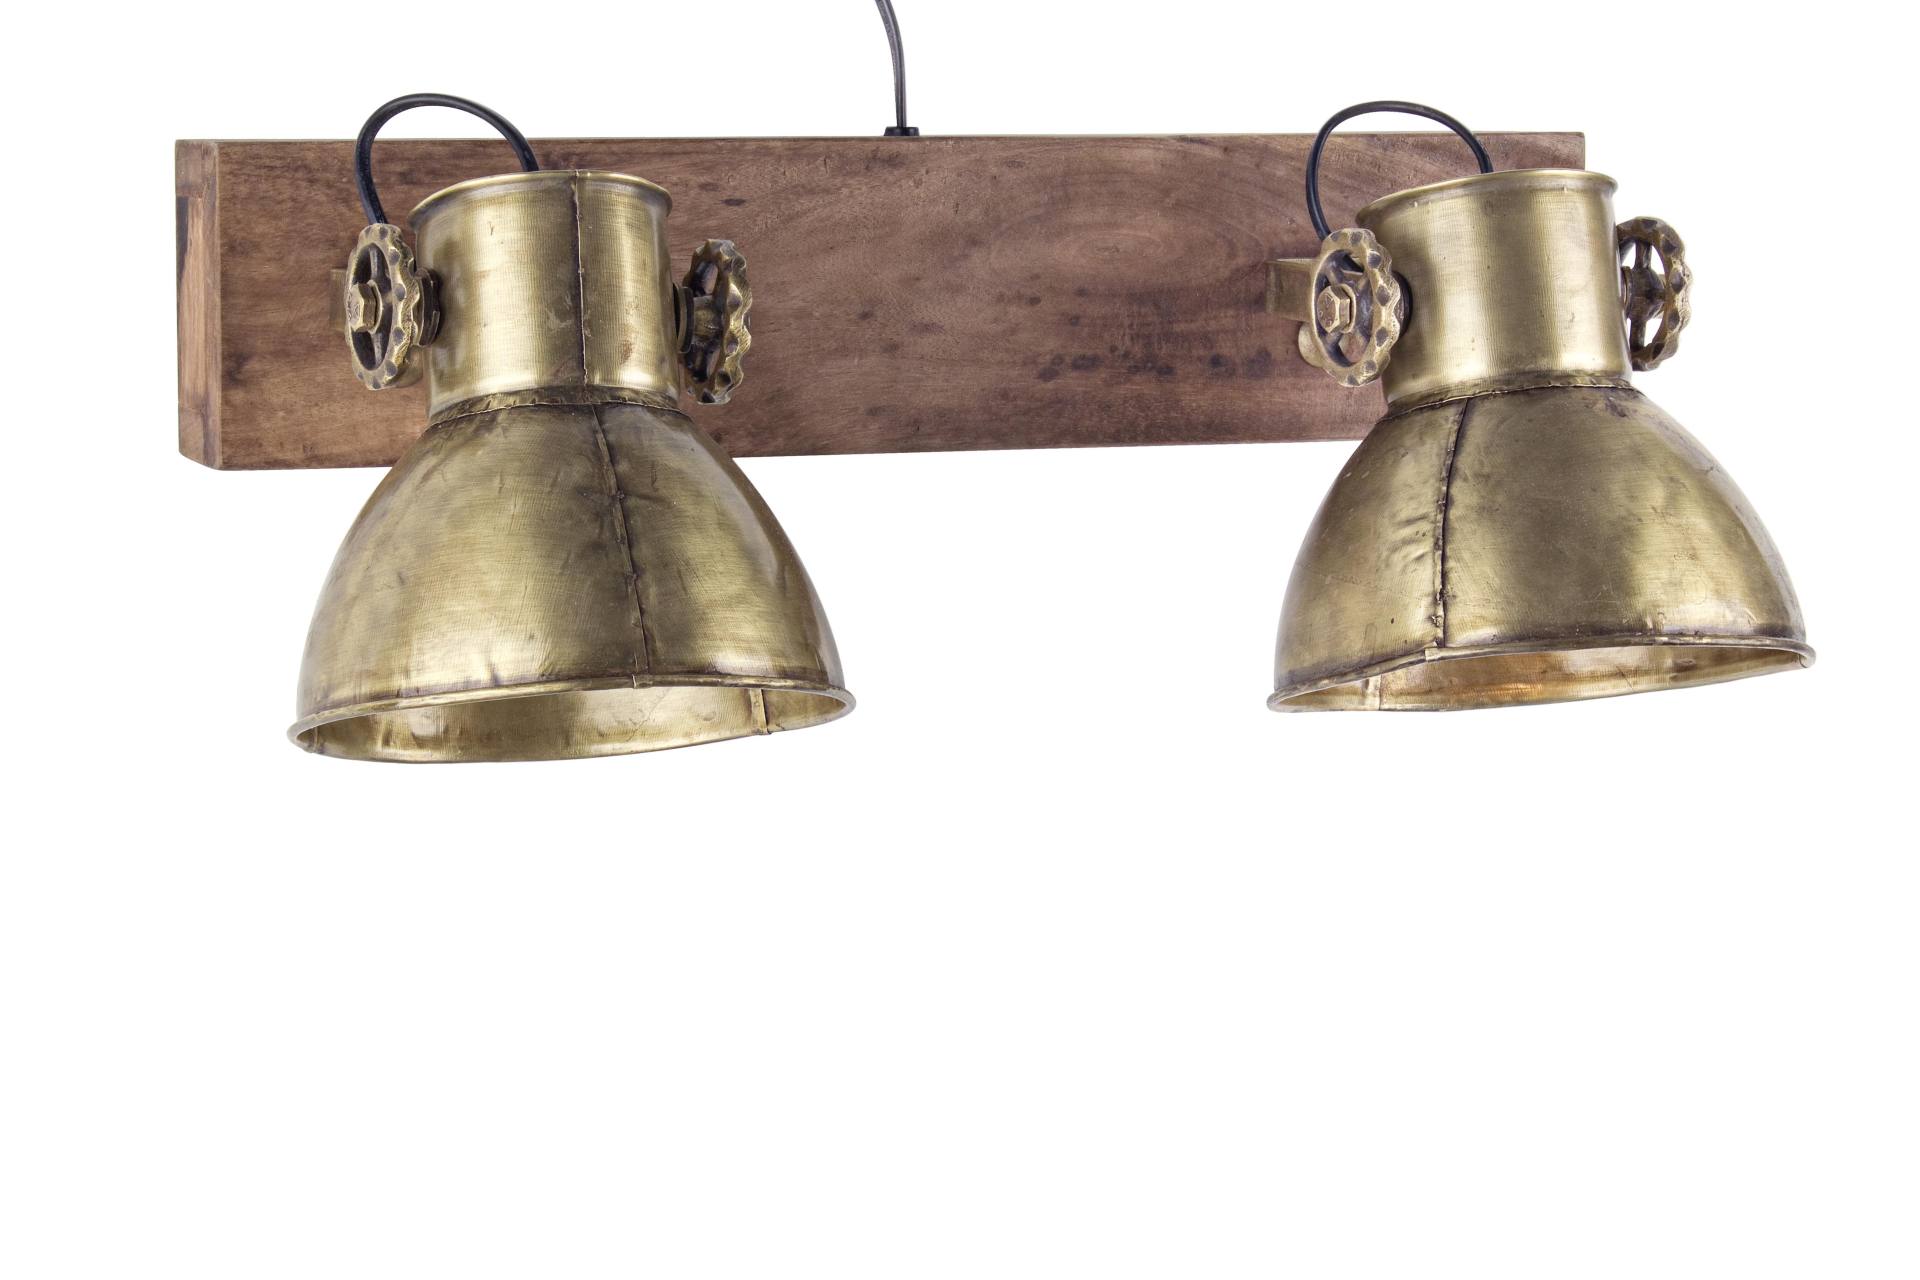 Die Wandleuchte Allique überzeugt mit ihrem klassischen Design. Gefertigt wurde sie aus Mangoholz, welches einen natürlichen Farbton besitzt. Der Lampenschirm ist aus Metall und hat eine goldene Farbe. Die Lampe besitzt eine Höhe von 27 cm.